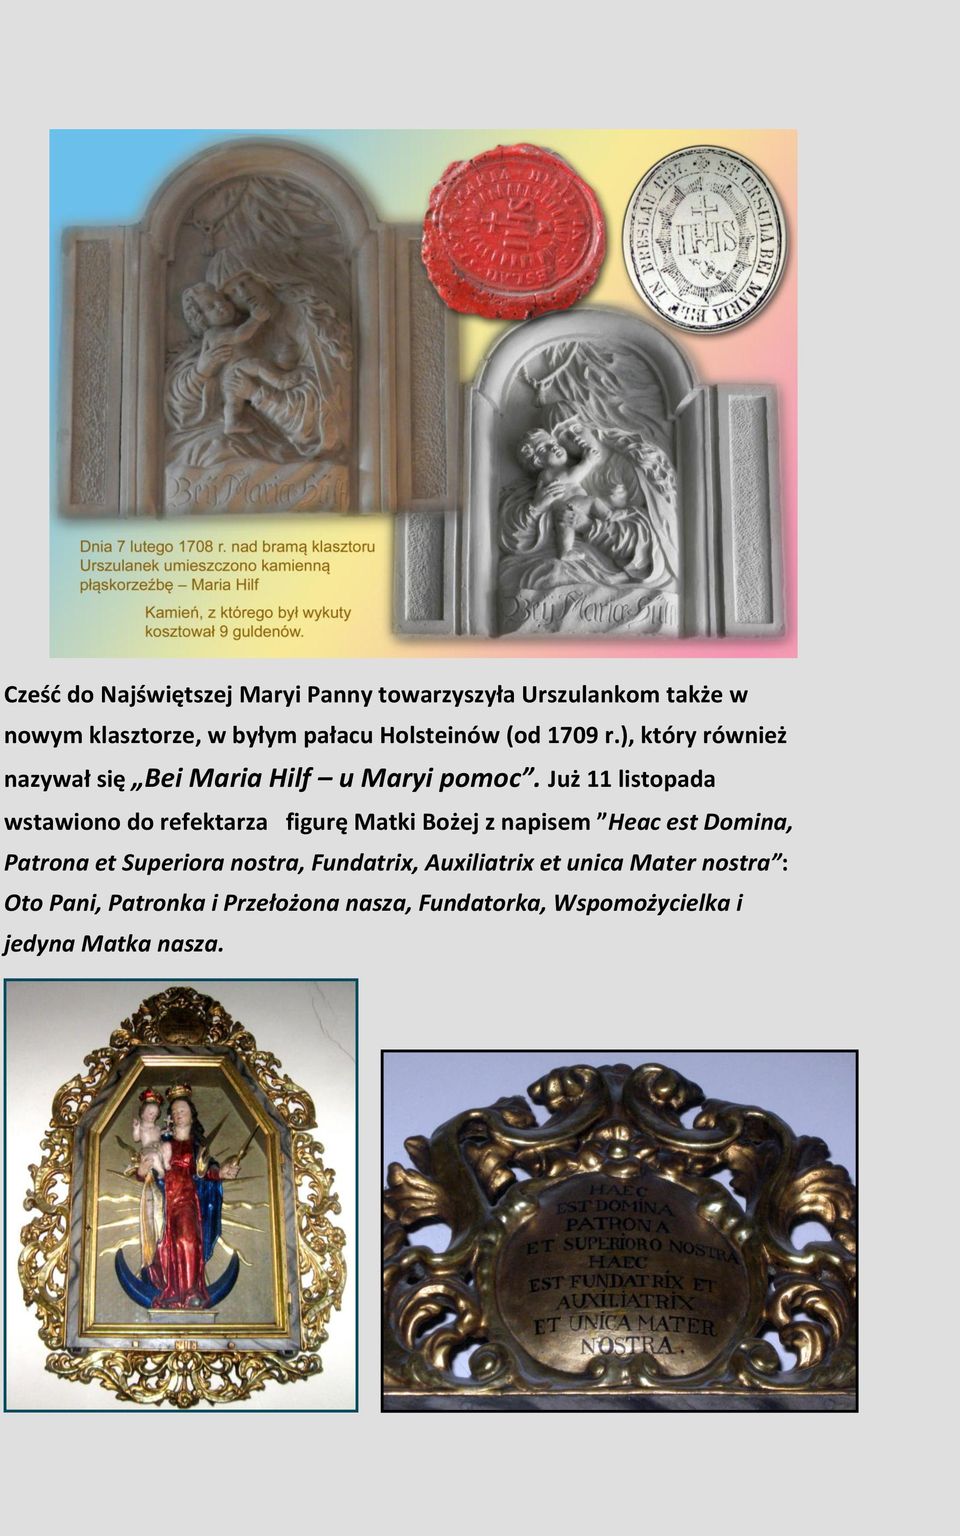 Już 11 listopada wstawiono do refektarza figurę Matki Bożej z napisem Heac est Domina, Patrona et Superiora